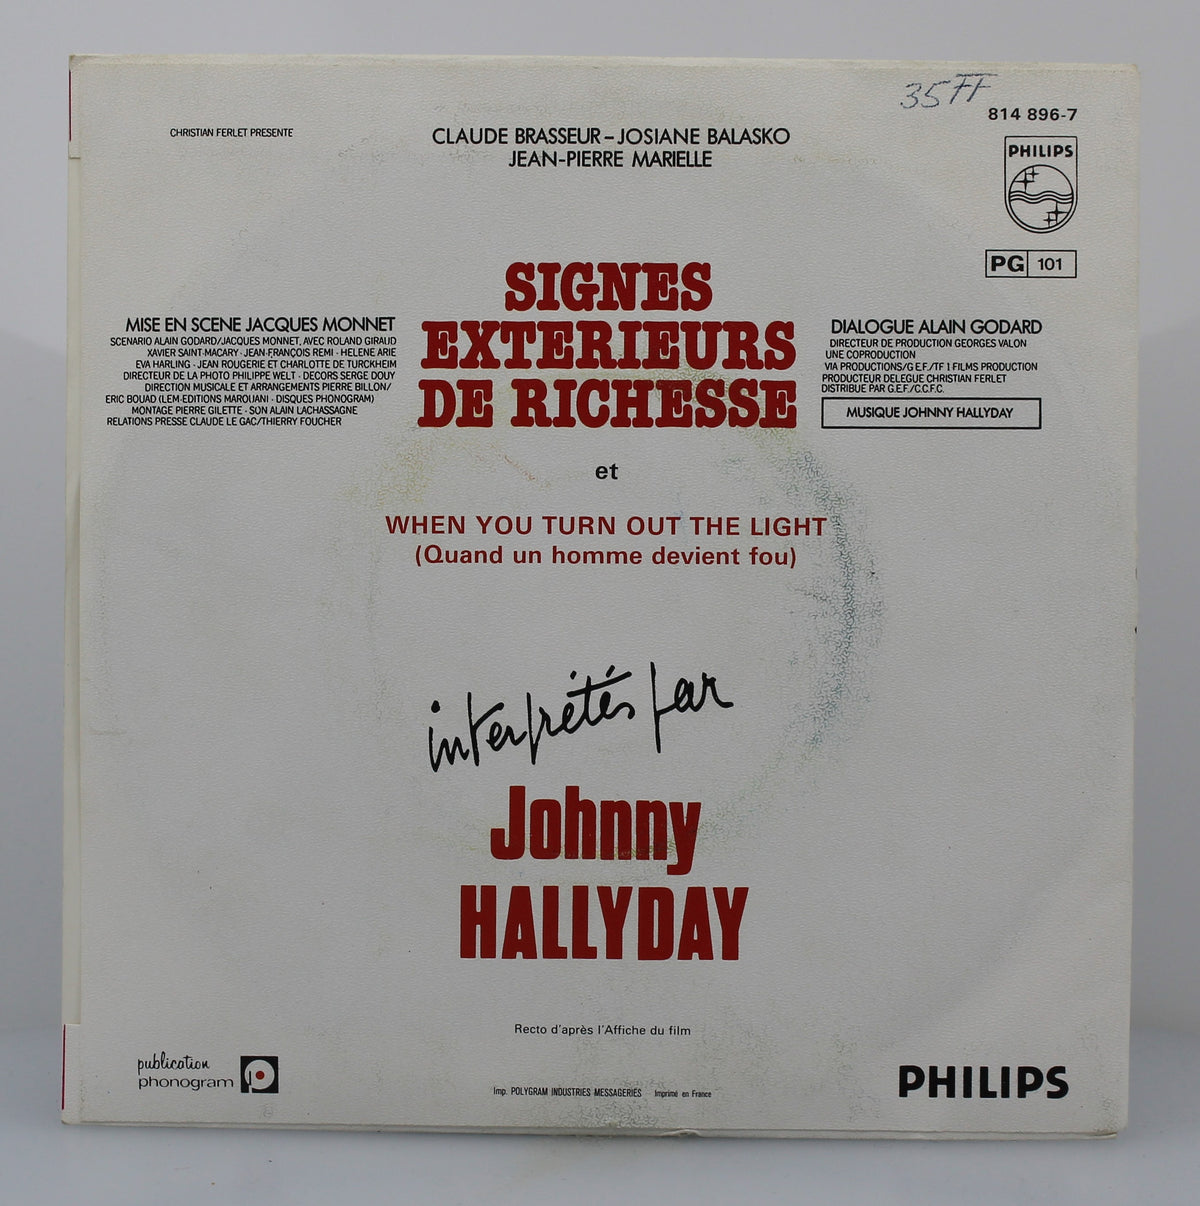 Johnny Hallyday – Extraits de la Bande Originale Du Film Signes Extérieurs De Richesse, Vinyl, 7&quot;, 45 RPM, Single, France 1983